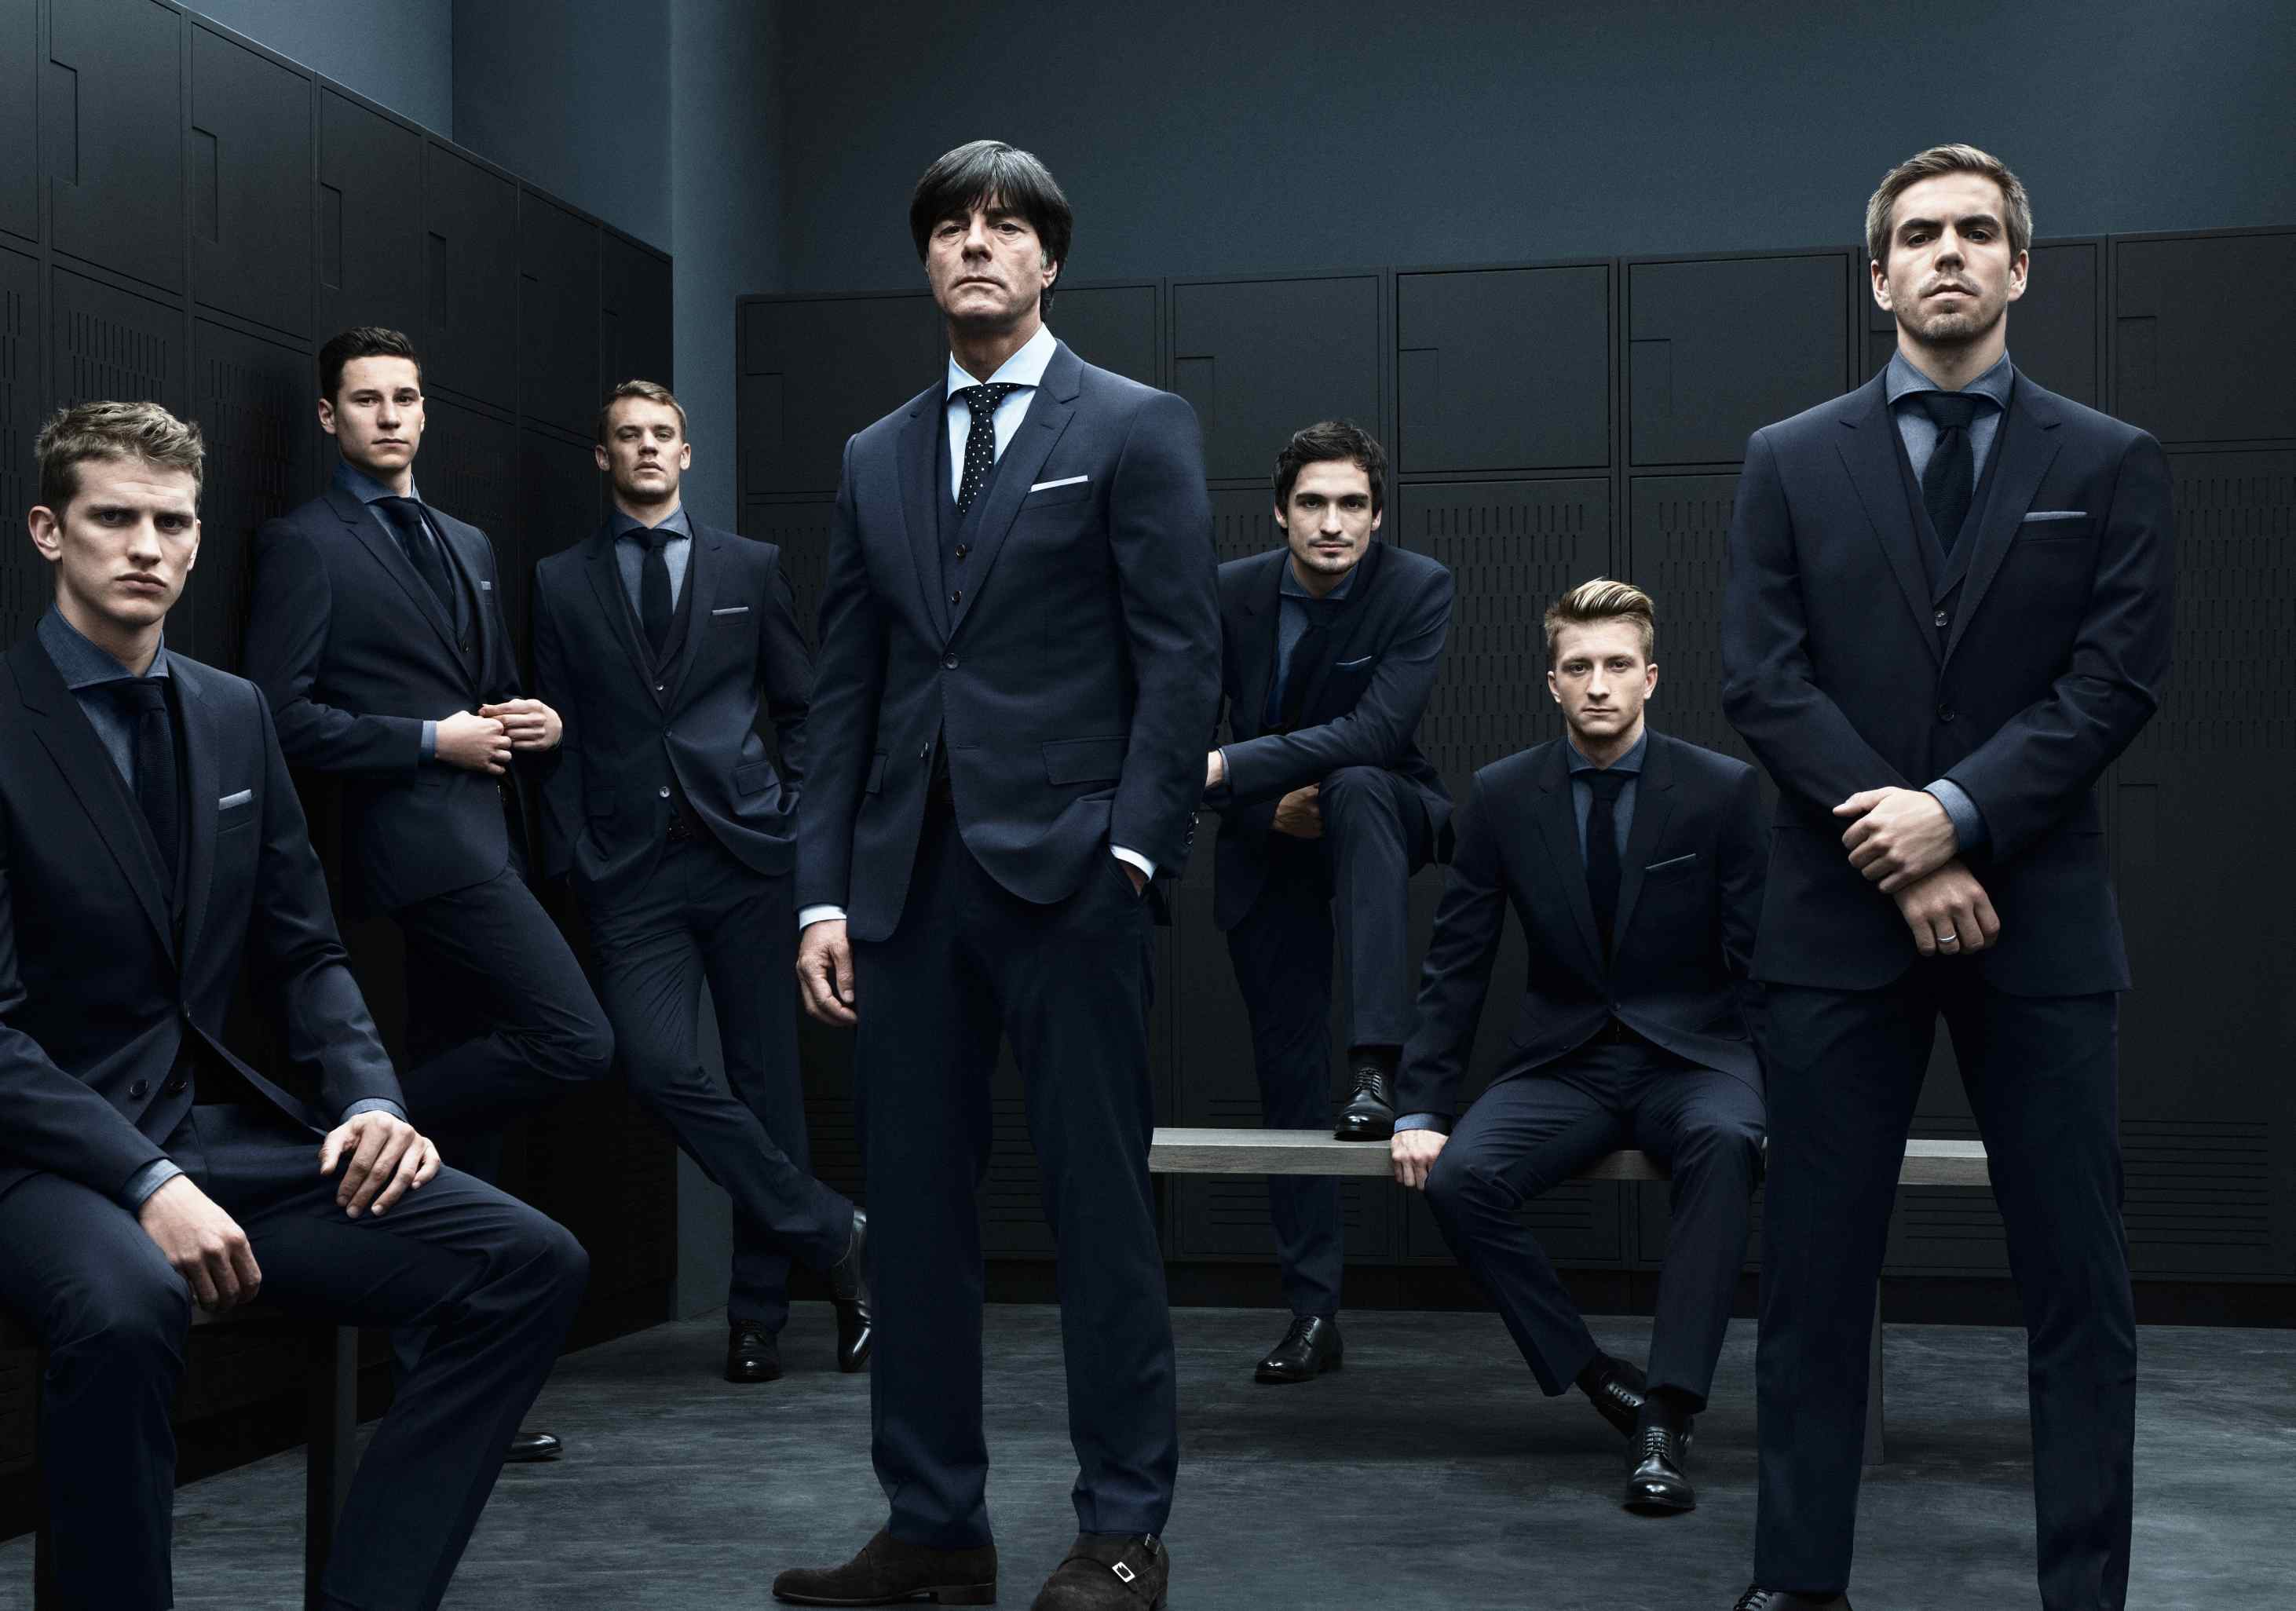 5 июля мужчины. Сборная Германии по футболу Hugo Boss. Сборная Германии по футболу в костюмах Hugo Boss. Несколько мужчин в костюмах. Пять мужчин в костюмах.